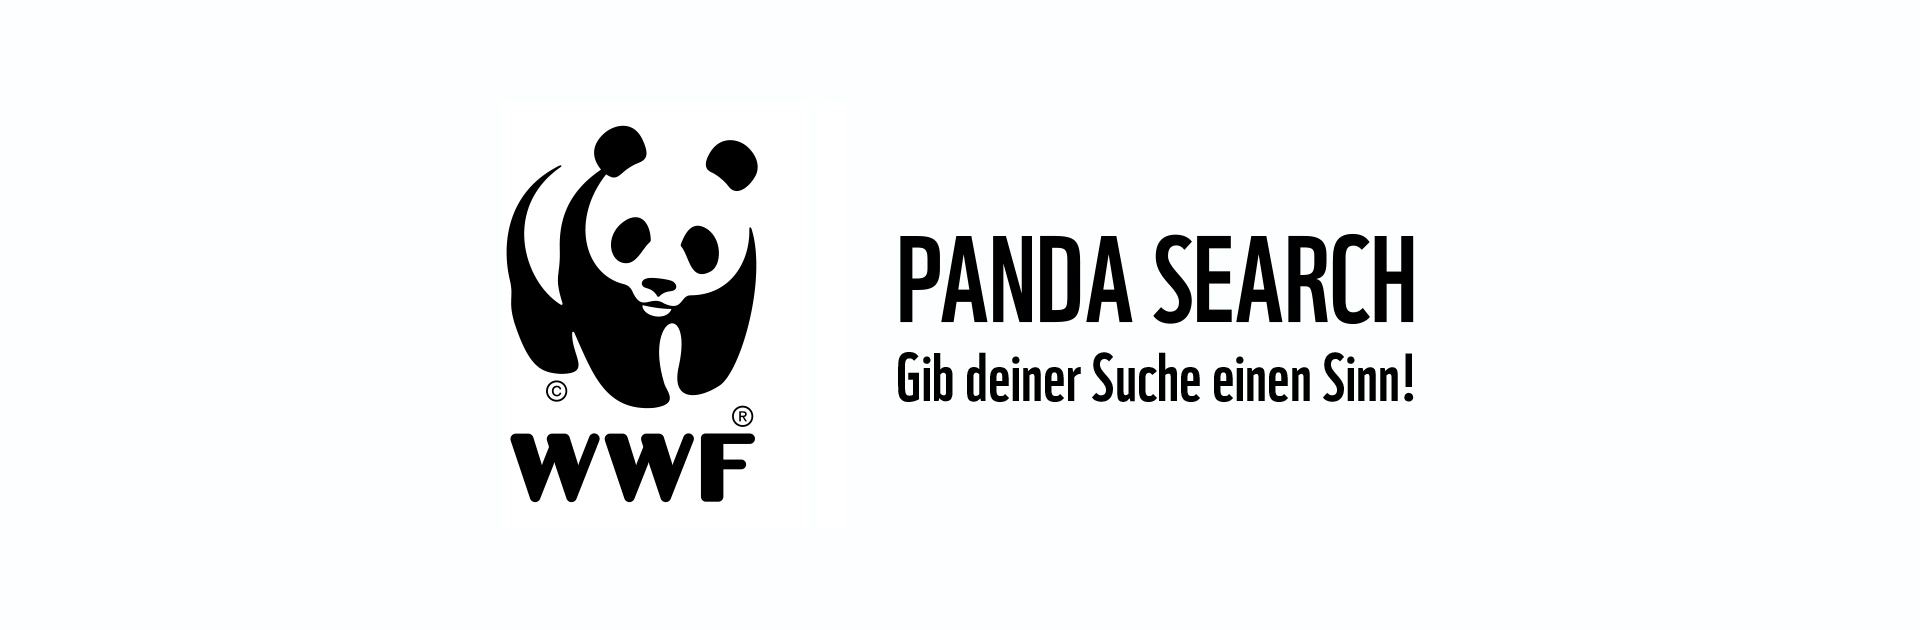 WWF-PandaSearch_01.jpg